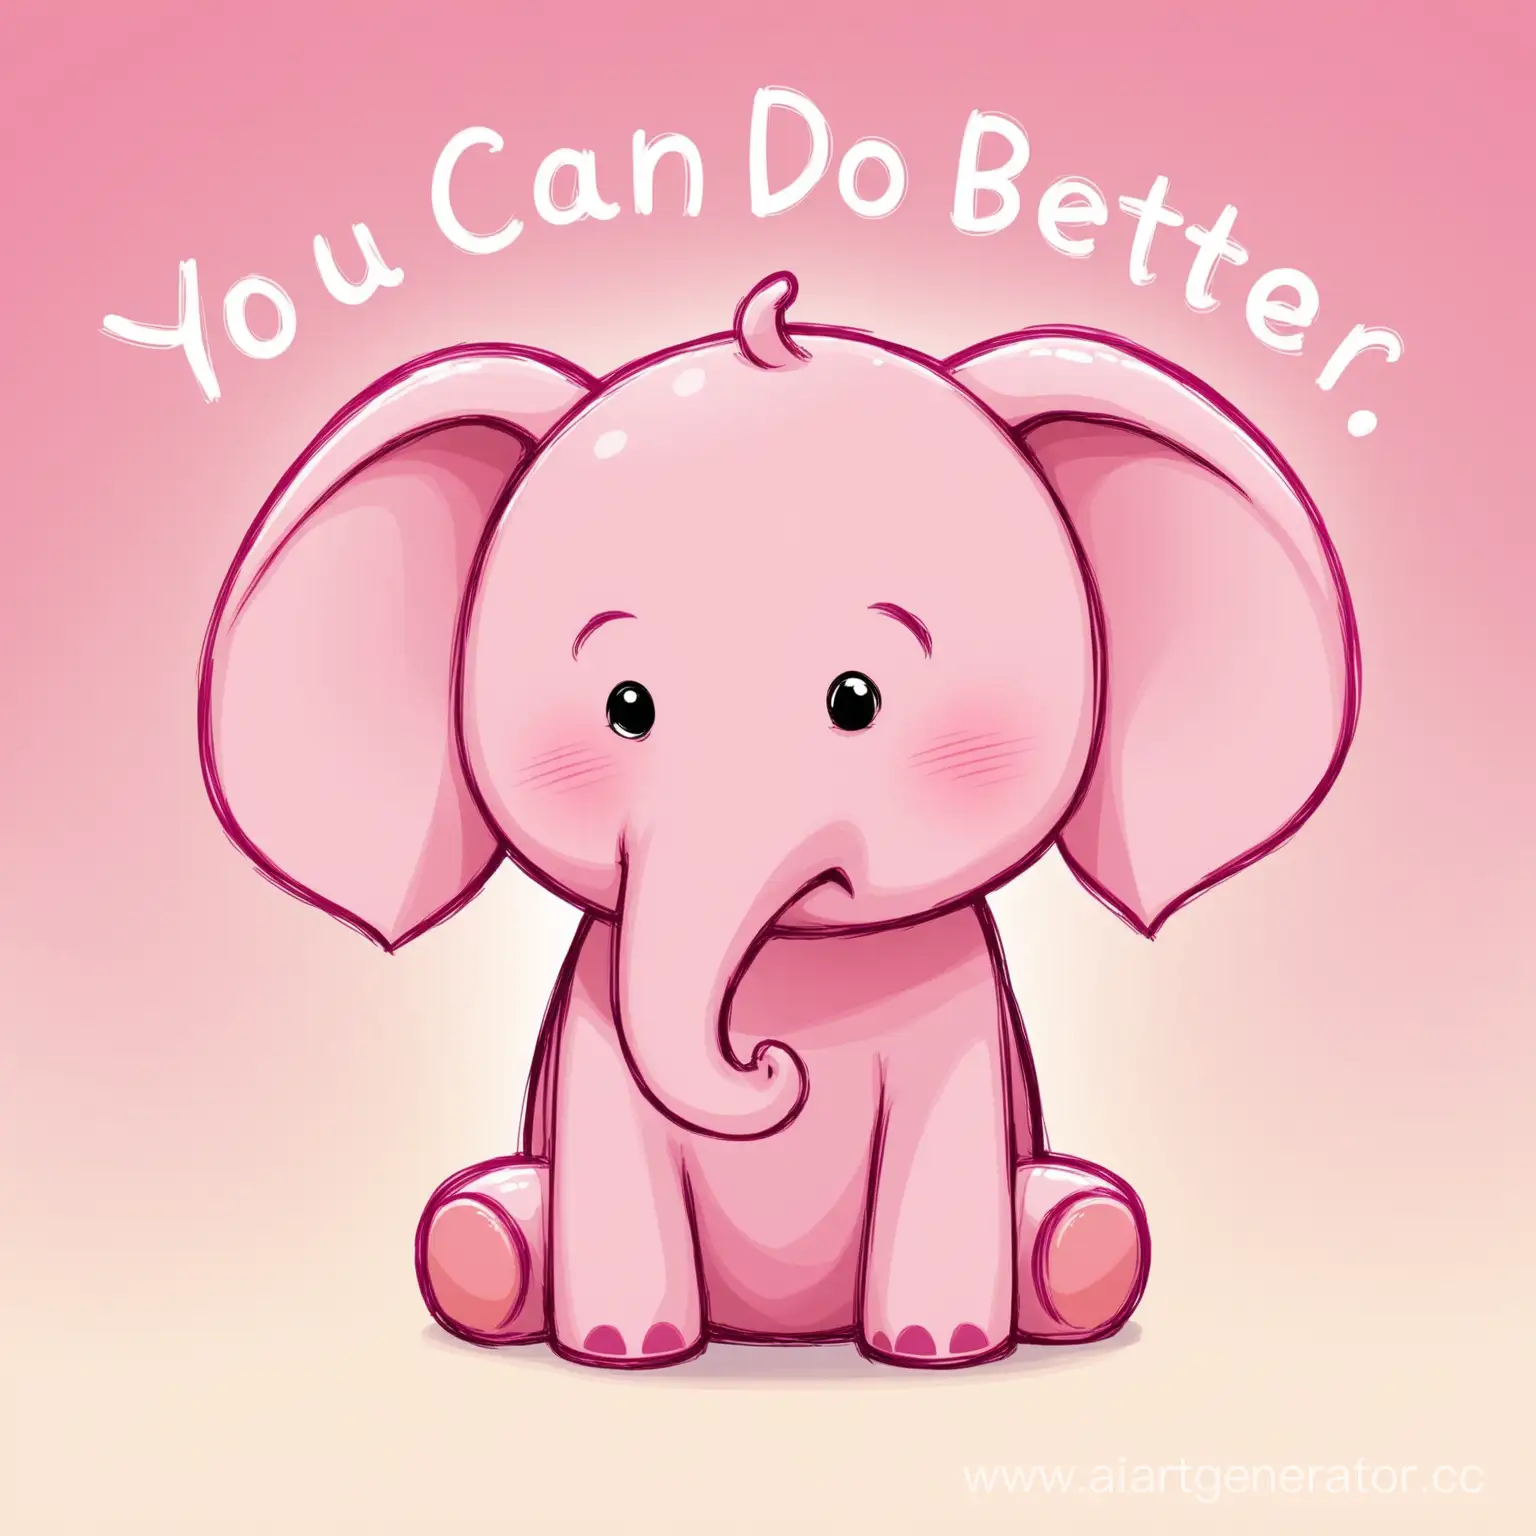 милый,грустный слоник розового цвета, с табличкой "можешь лучше"